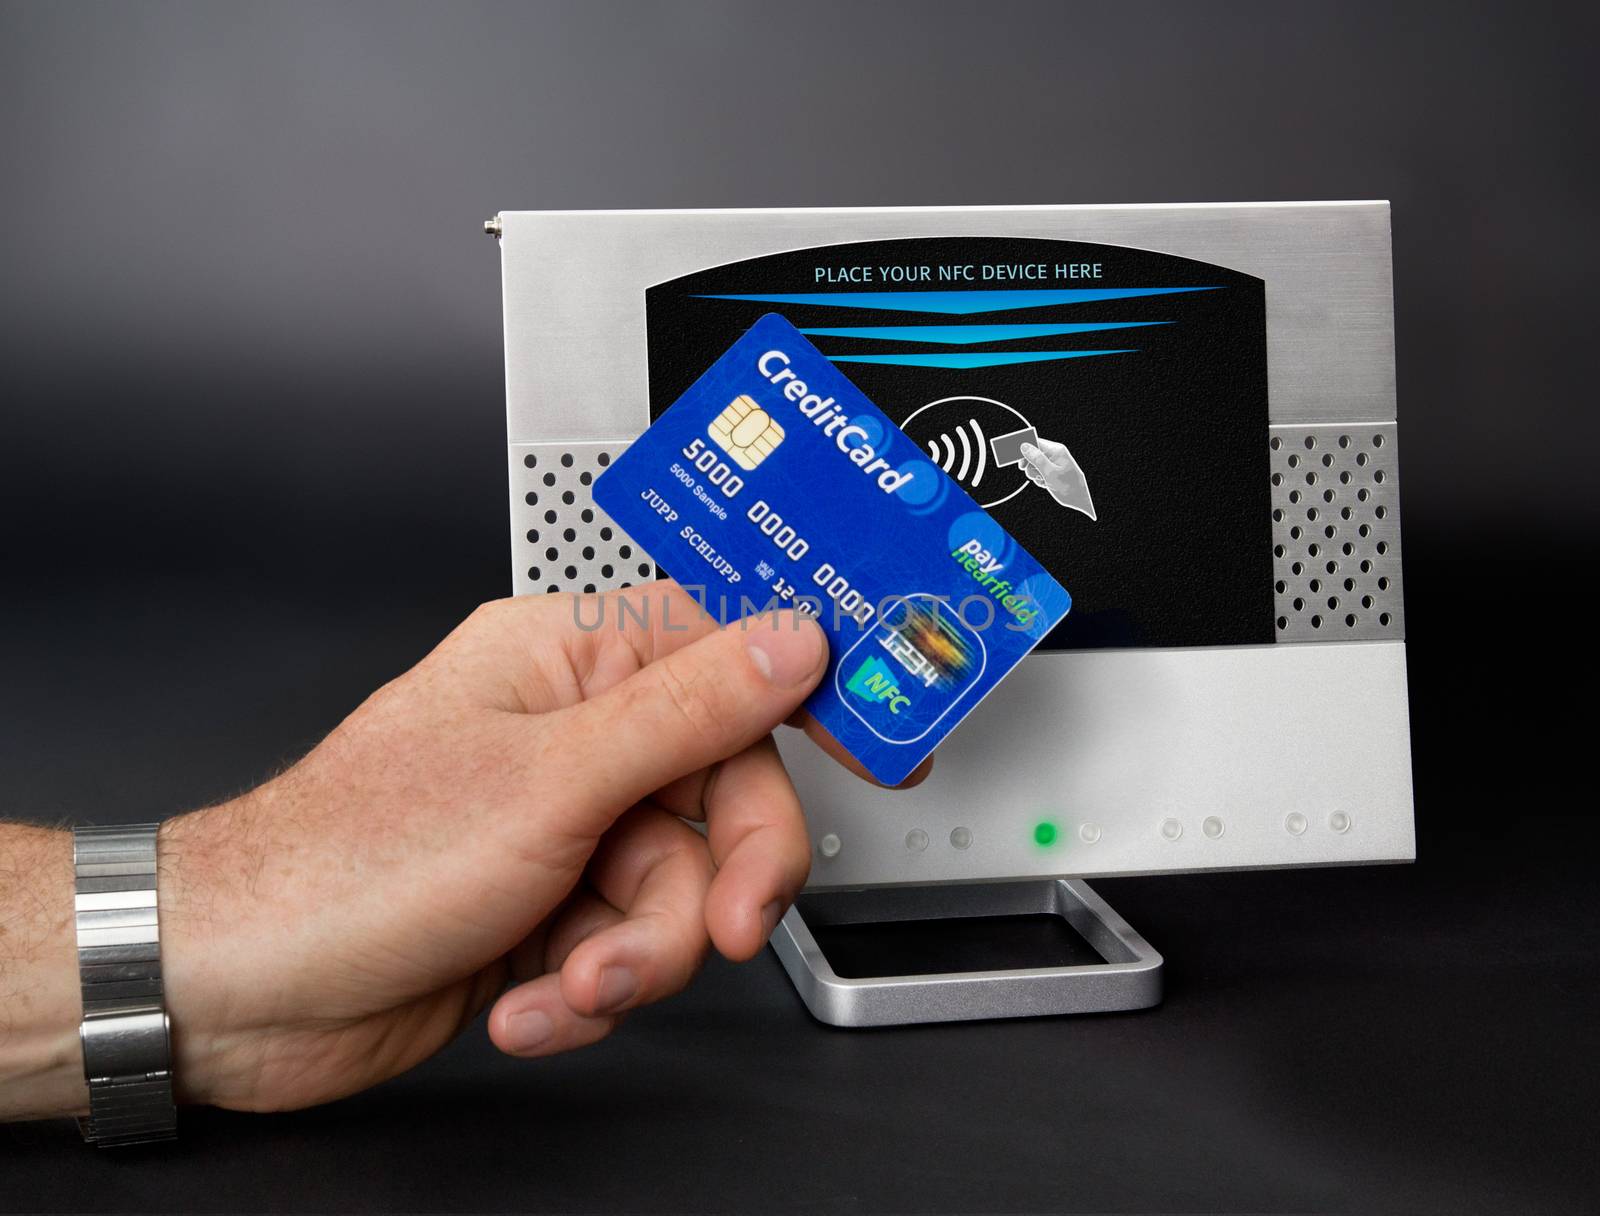 NFC - Near field communication / contactless payment 